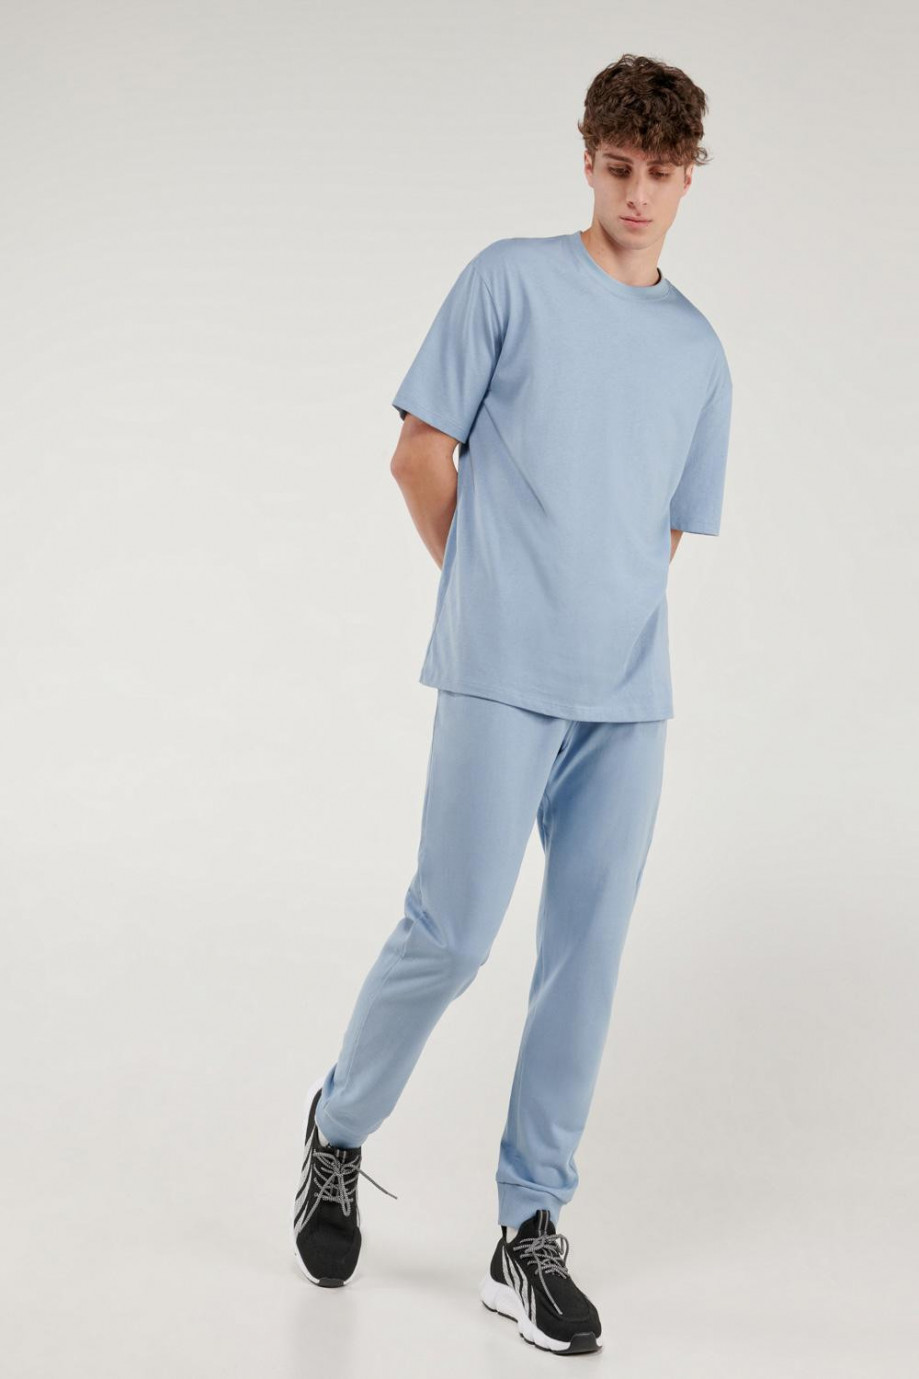 Pantalón jogger azul, con pretina y puños en rib